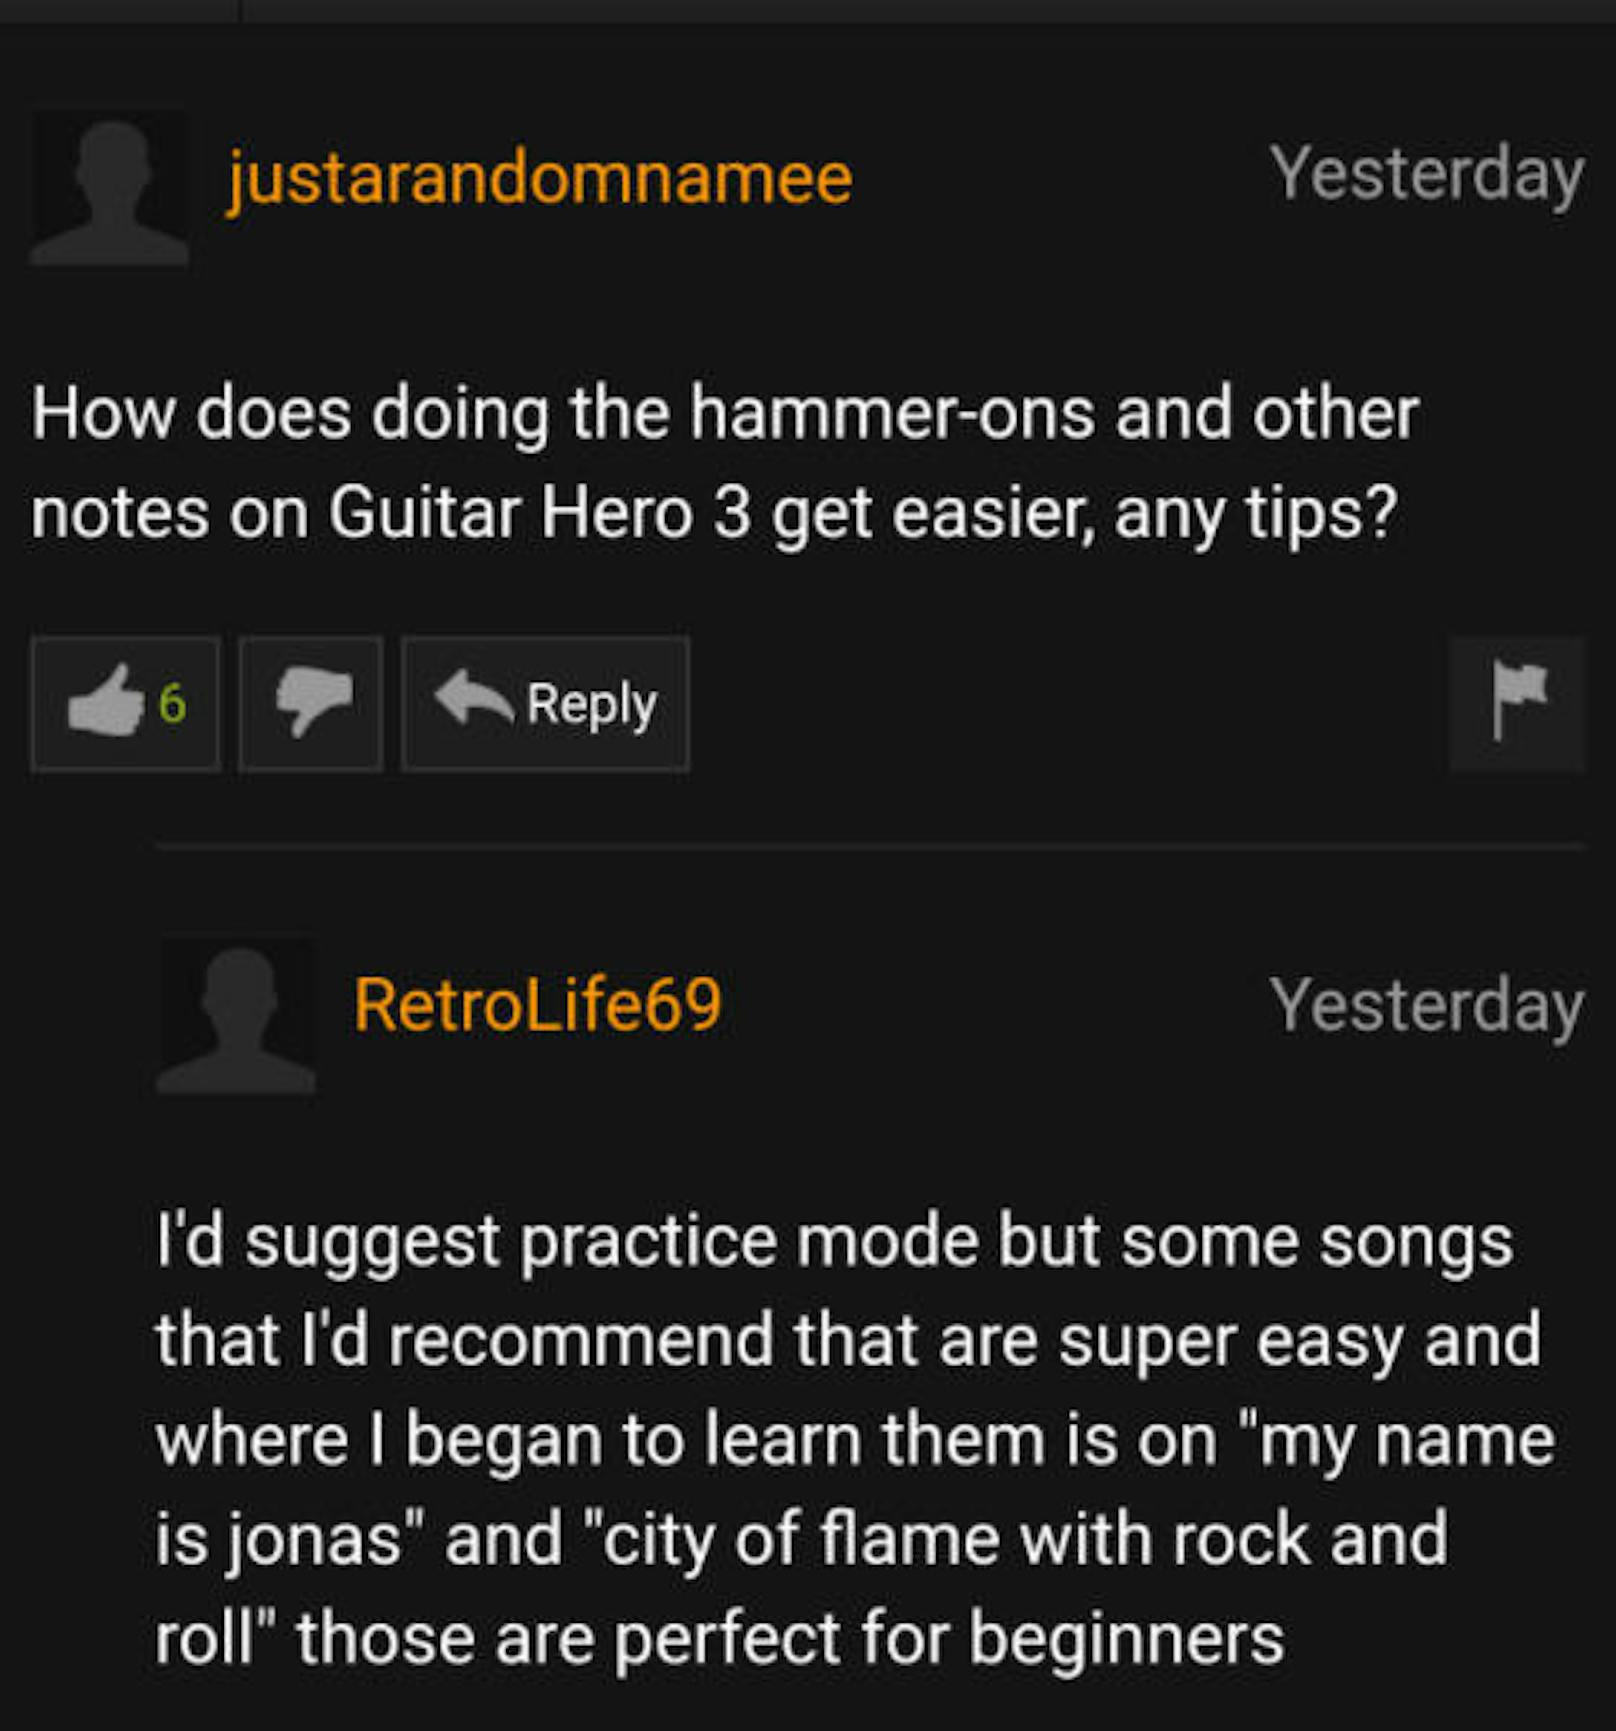 Ein anderer Nutzer sucht bei der Pornhub-Community Rat zum Videospiel "Guitar Hero 3".